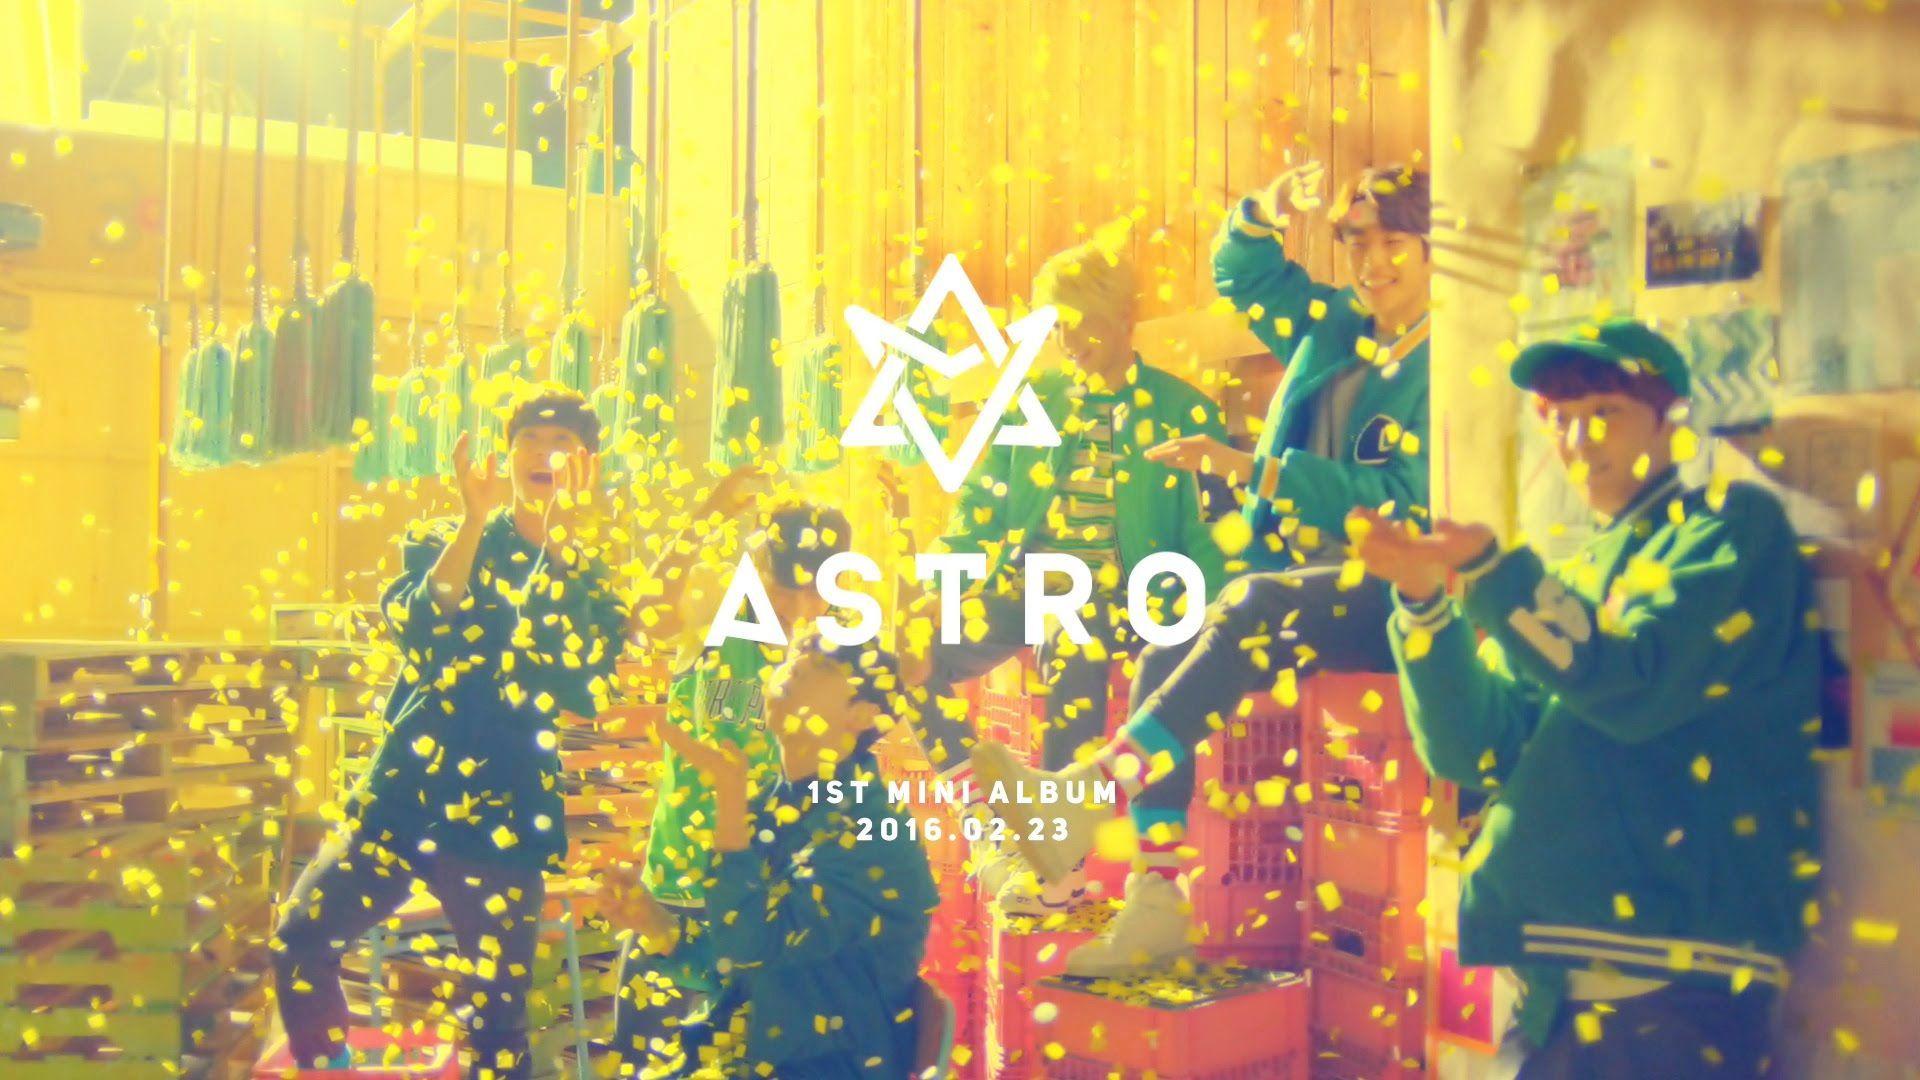 Astro Kpop Computer Wallpapers - Top Free Astro Kpop Computer